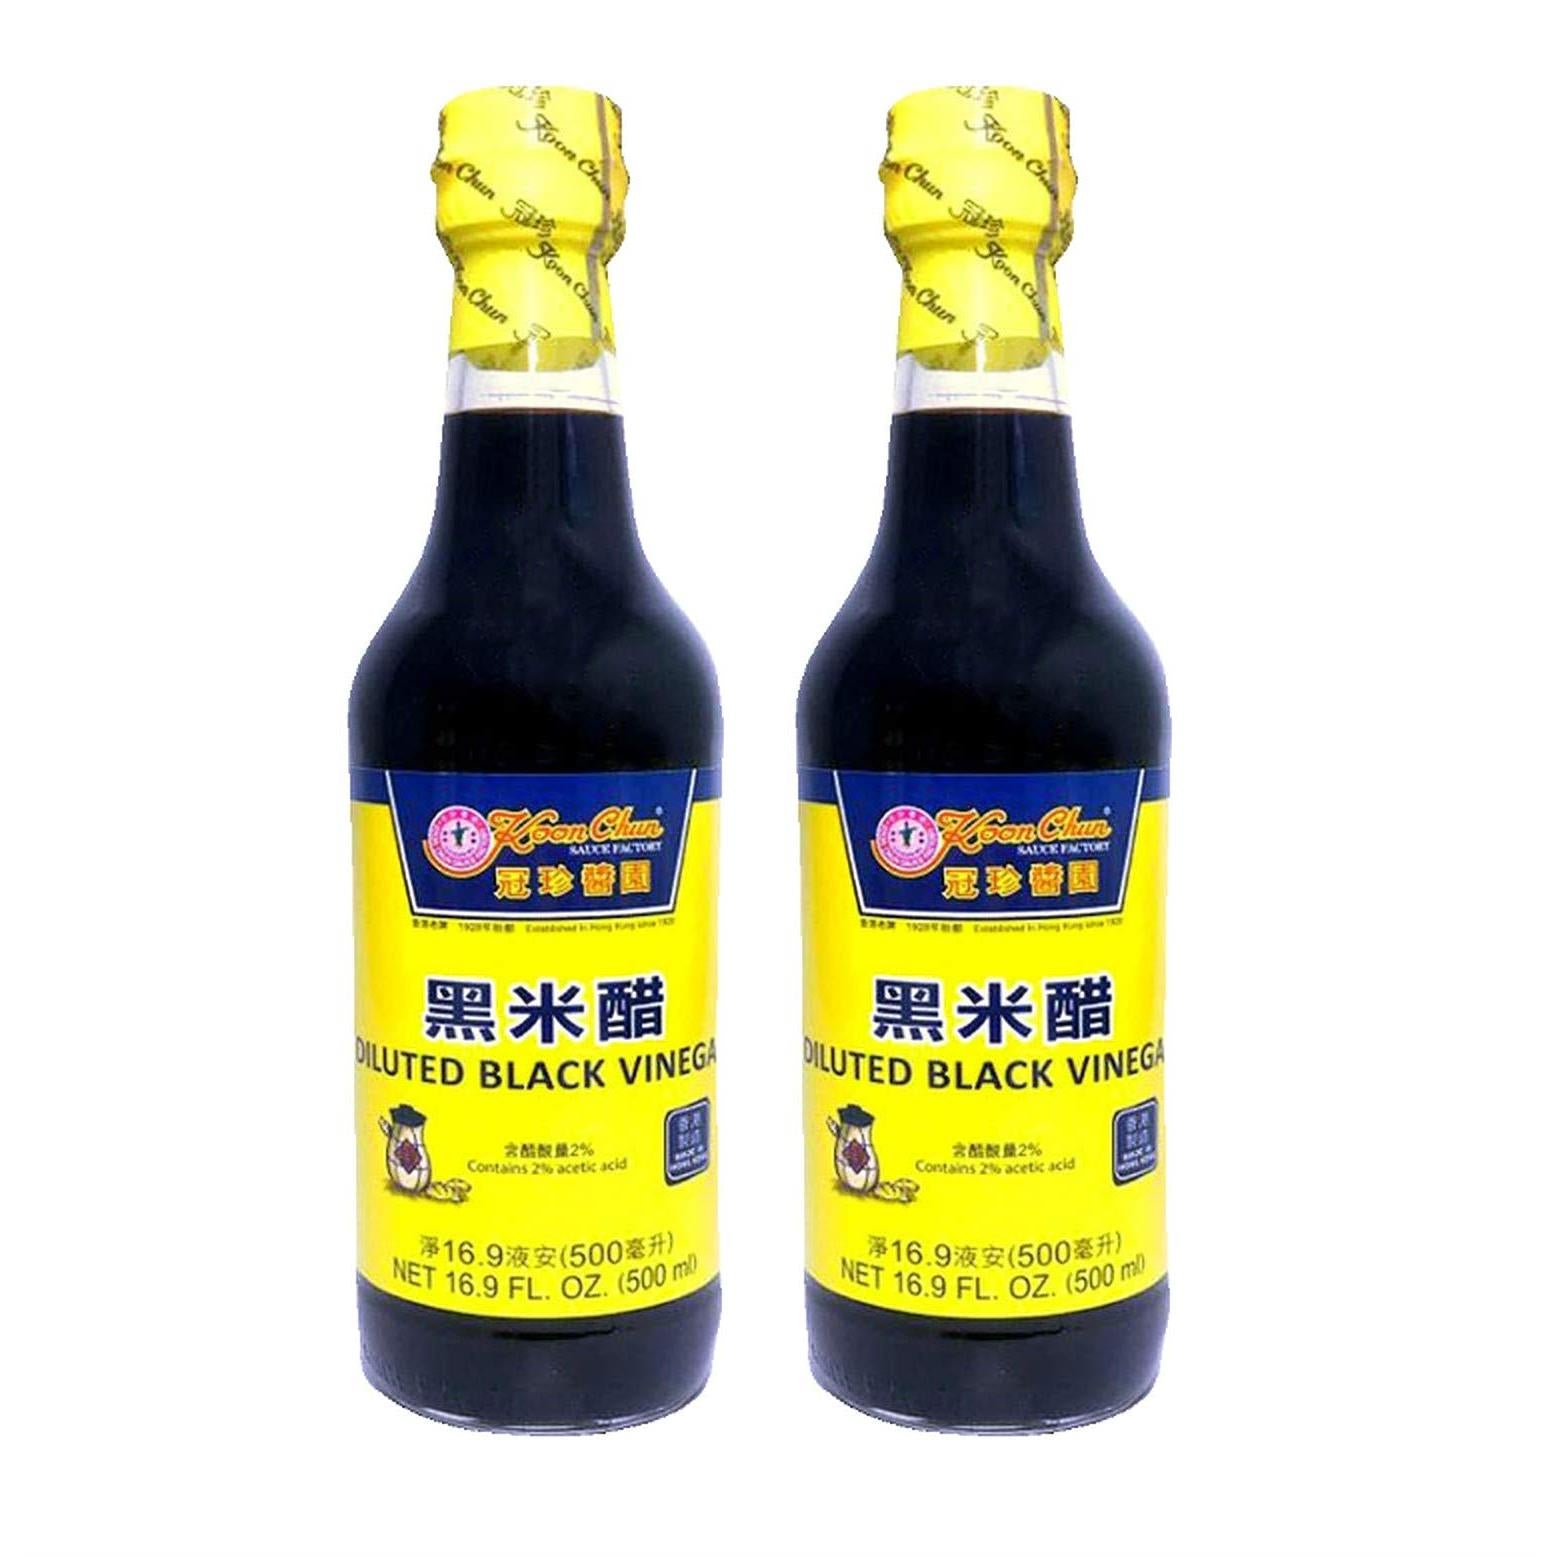 Koon Chun Diluted Black Vinegar (2 Pack, Total of 1000mL)